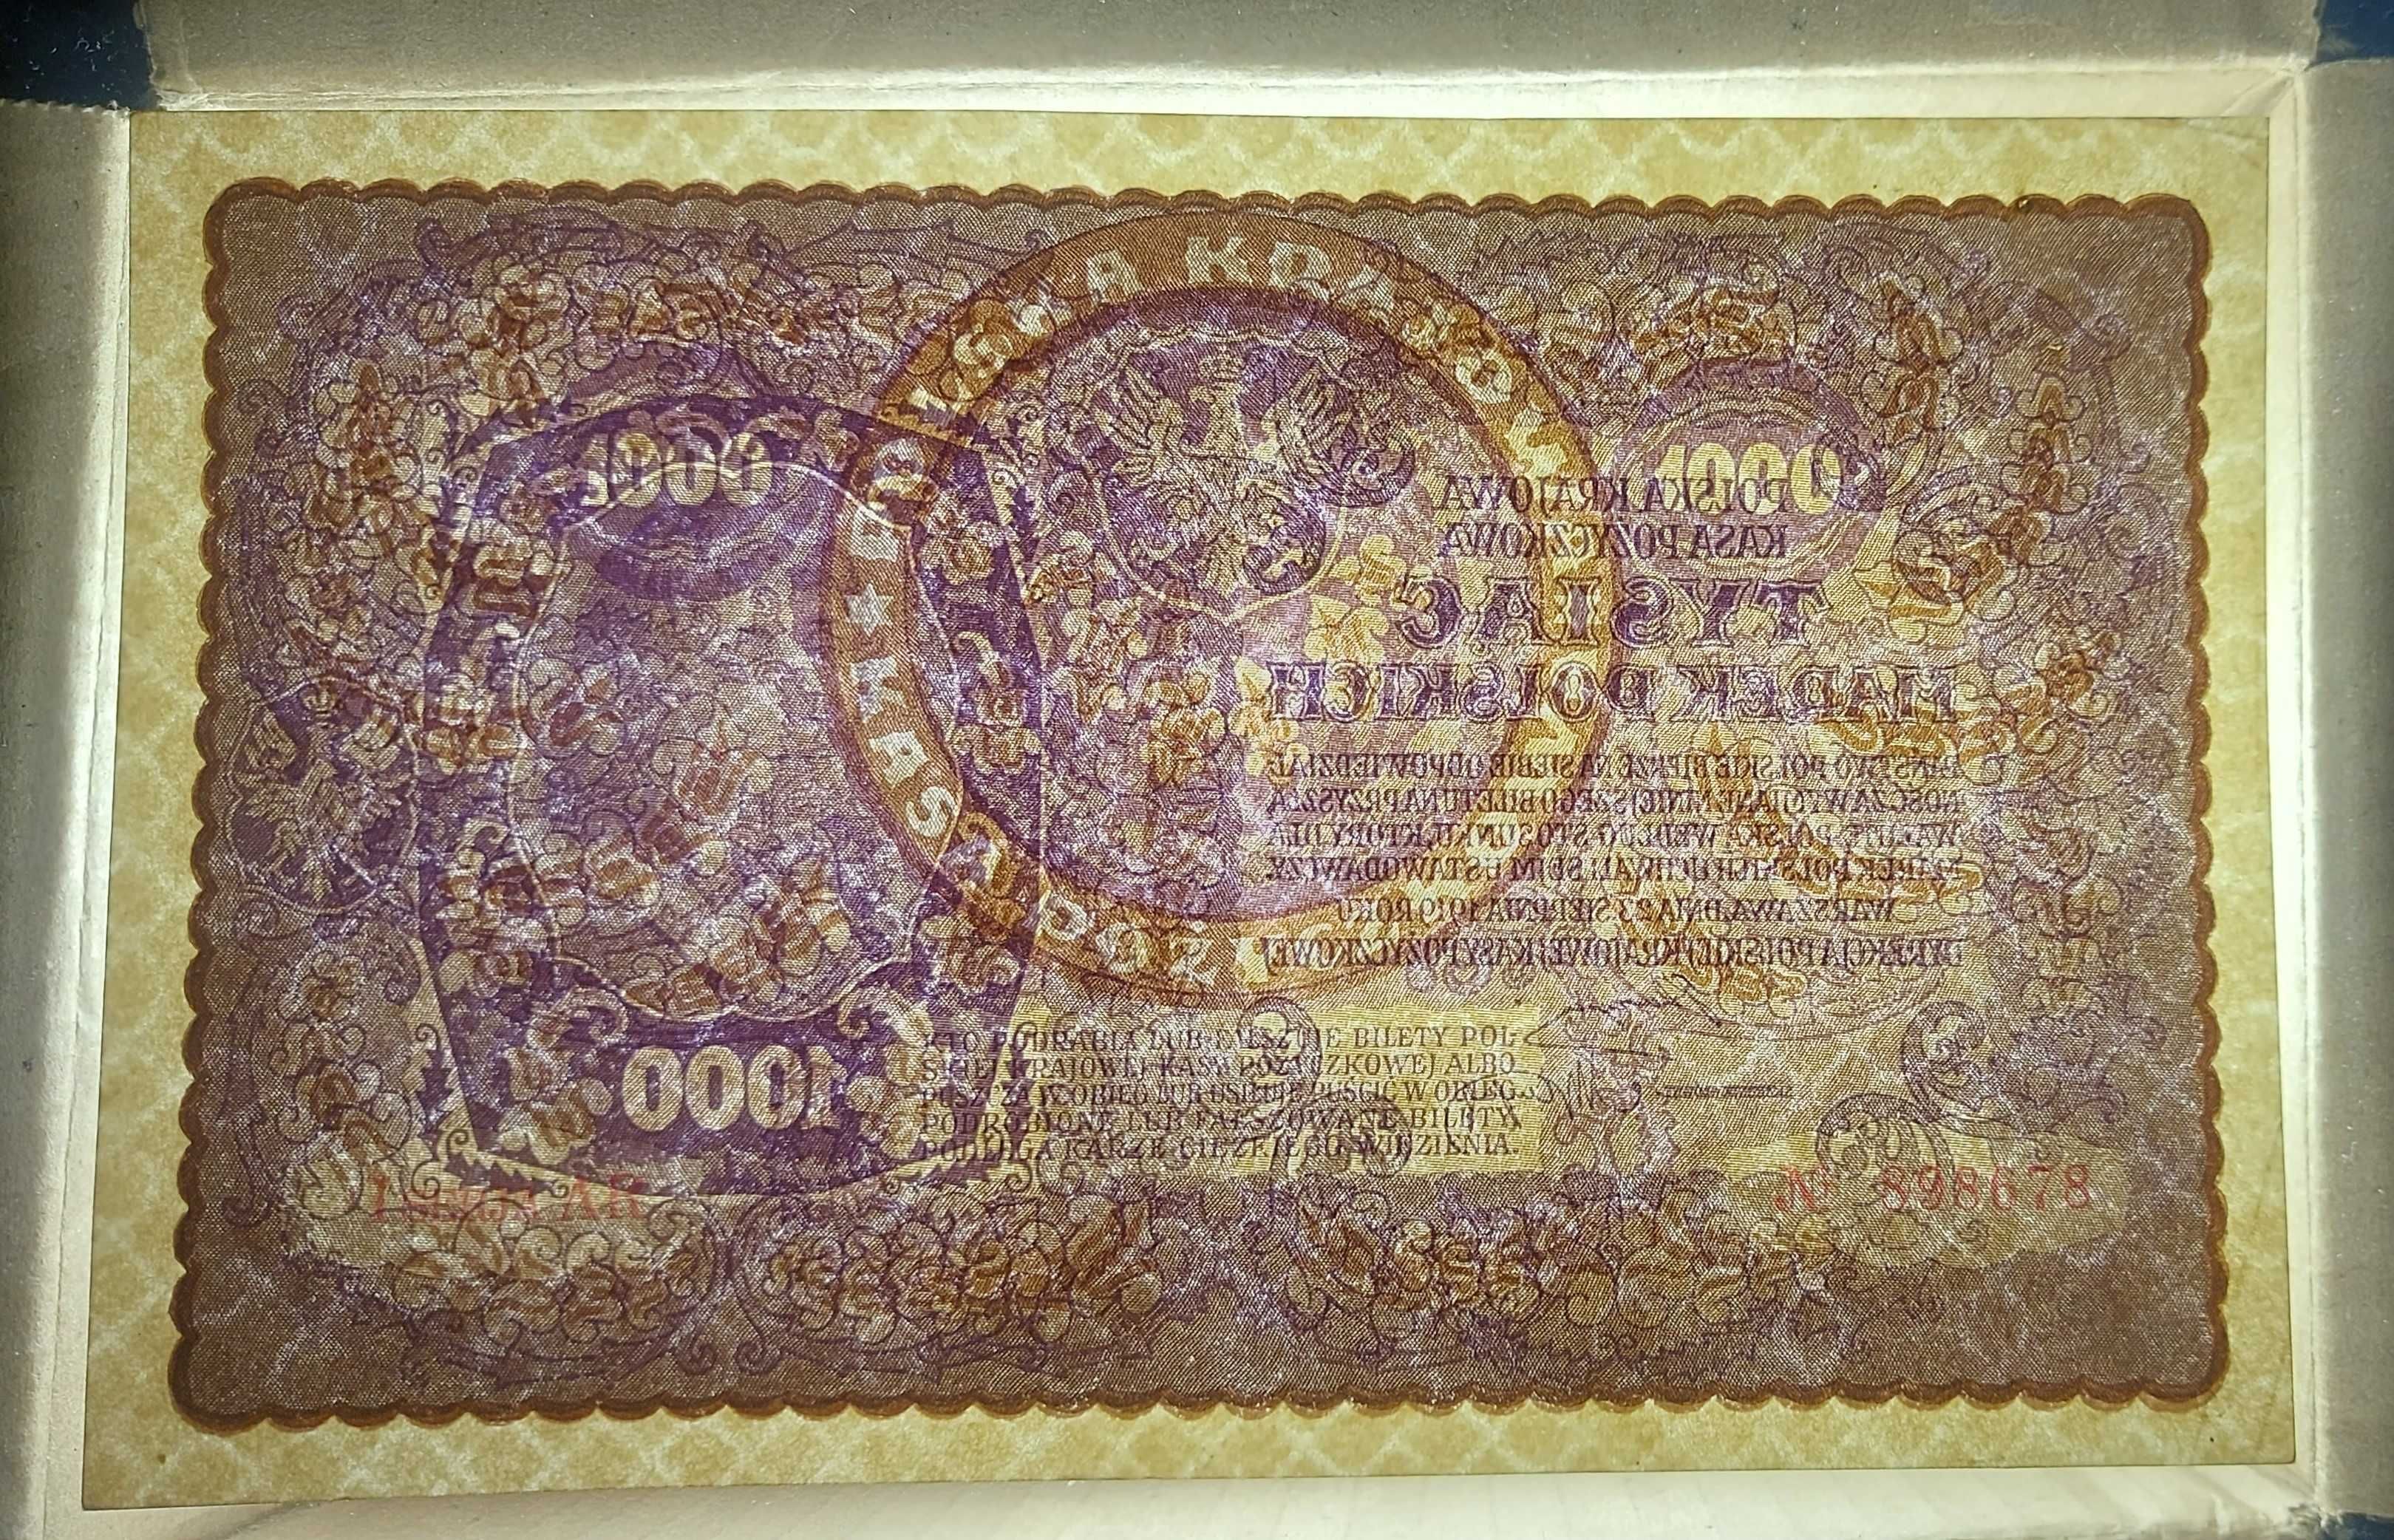 Banknot 1000 marek polskich z 1919 roku.